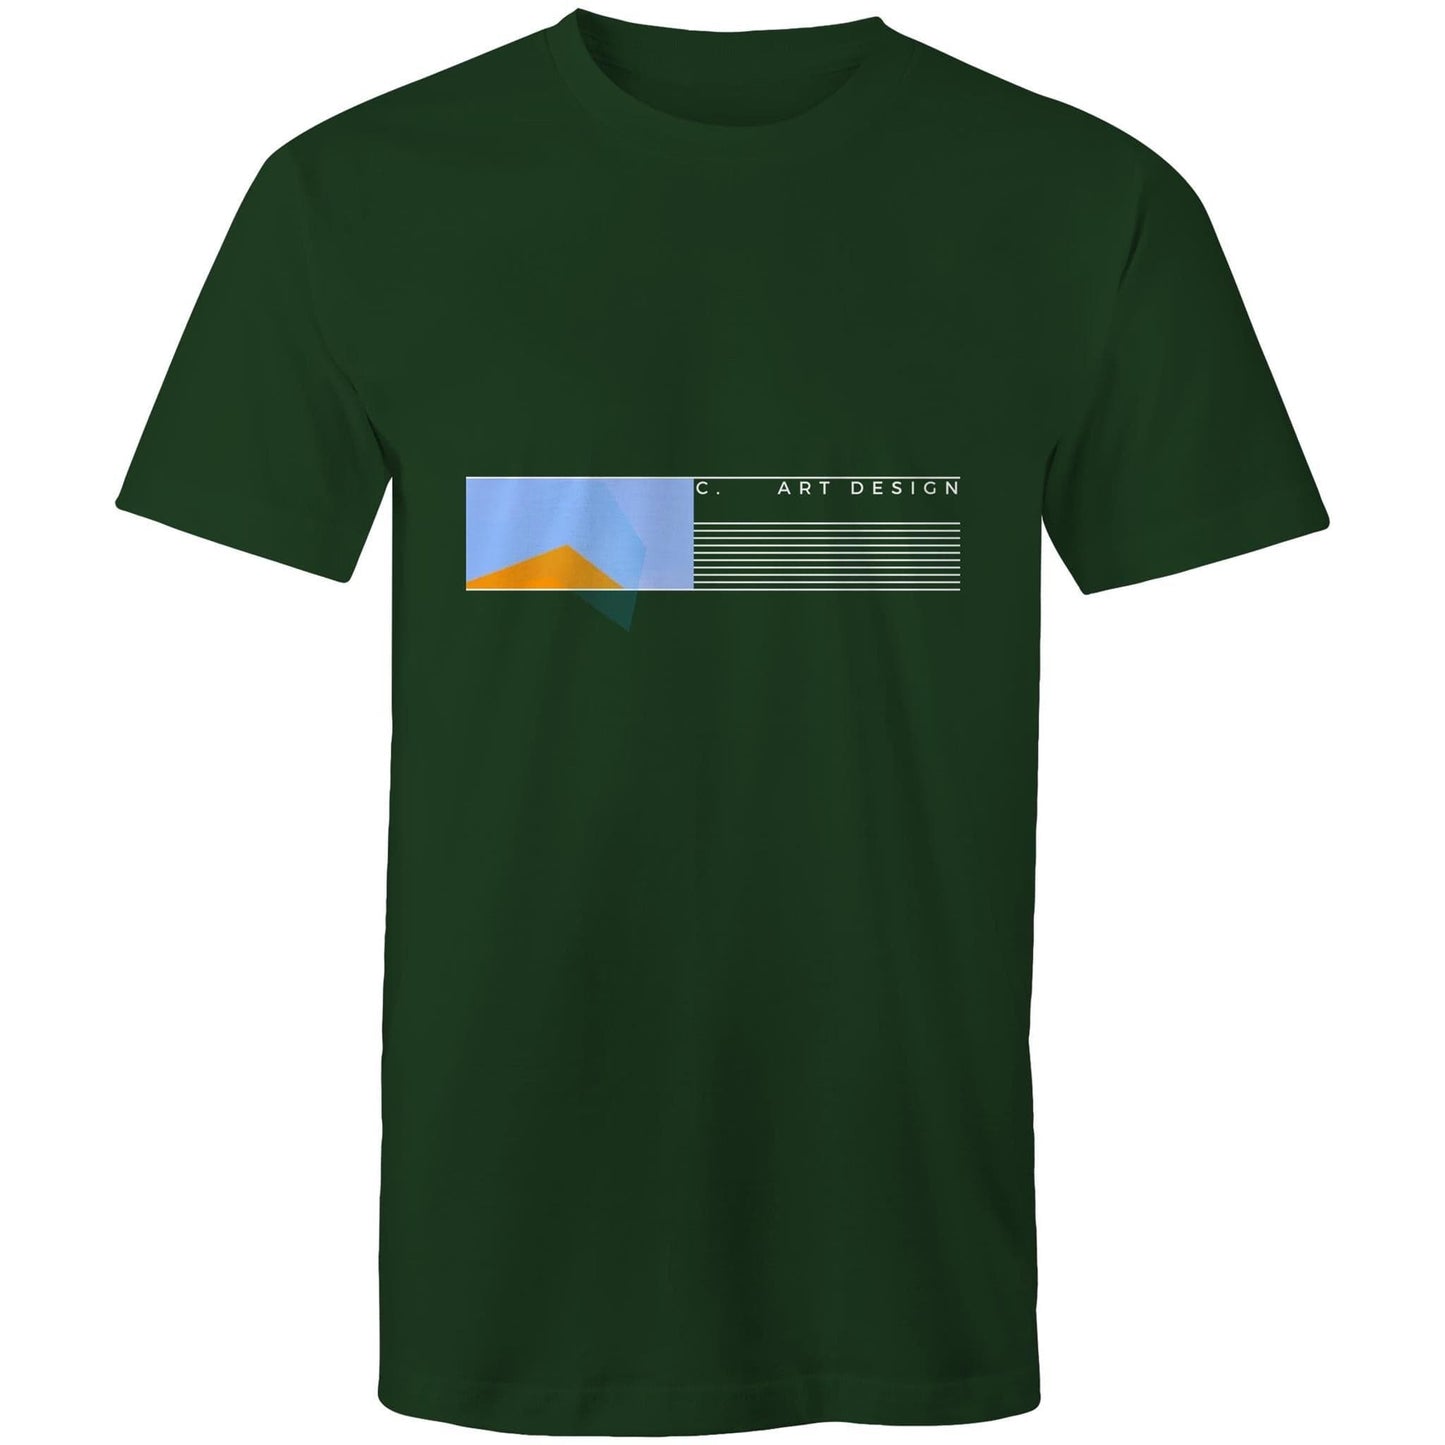 Forest Green / Small C. Art Design - Horizon Mens T-Shirt